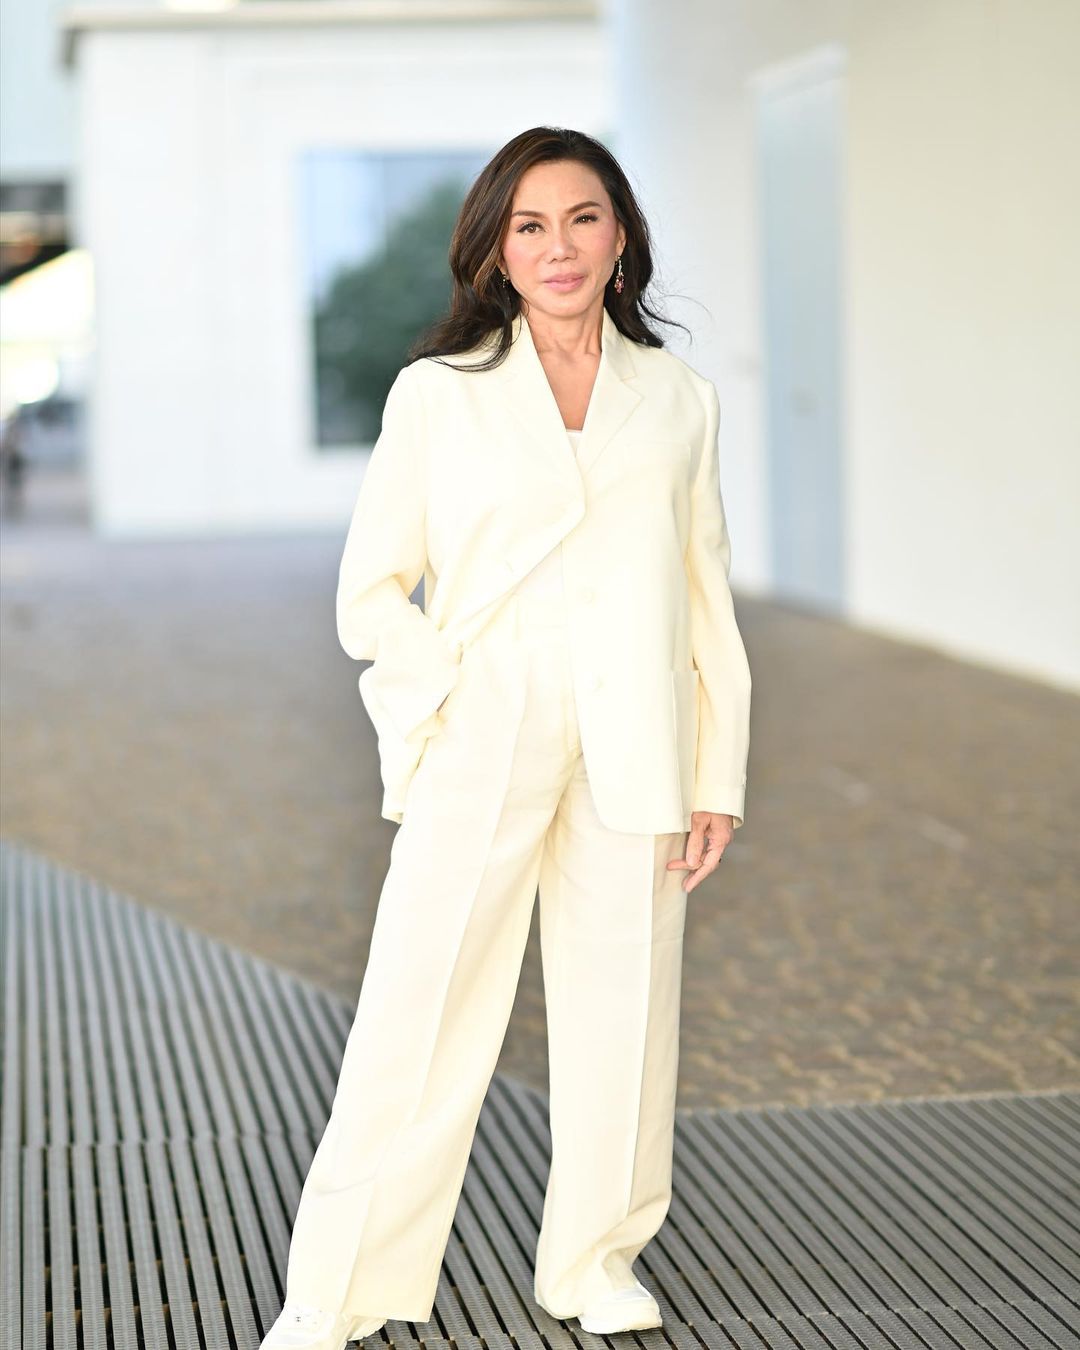 Dr. Vicki Belo Defies Age With Diverse Looks PRADA